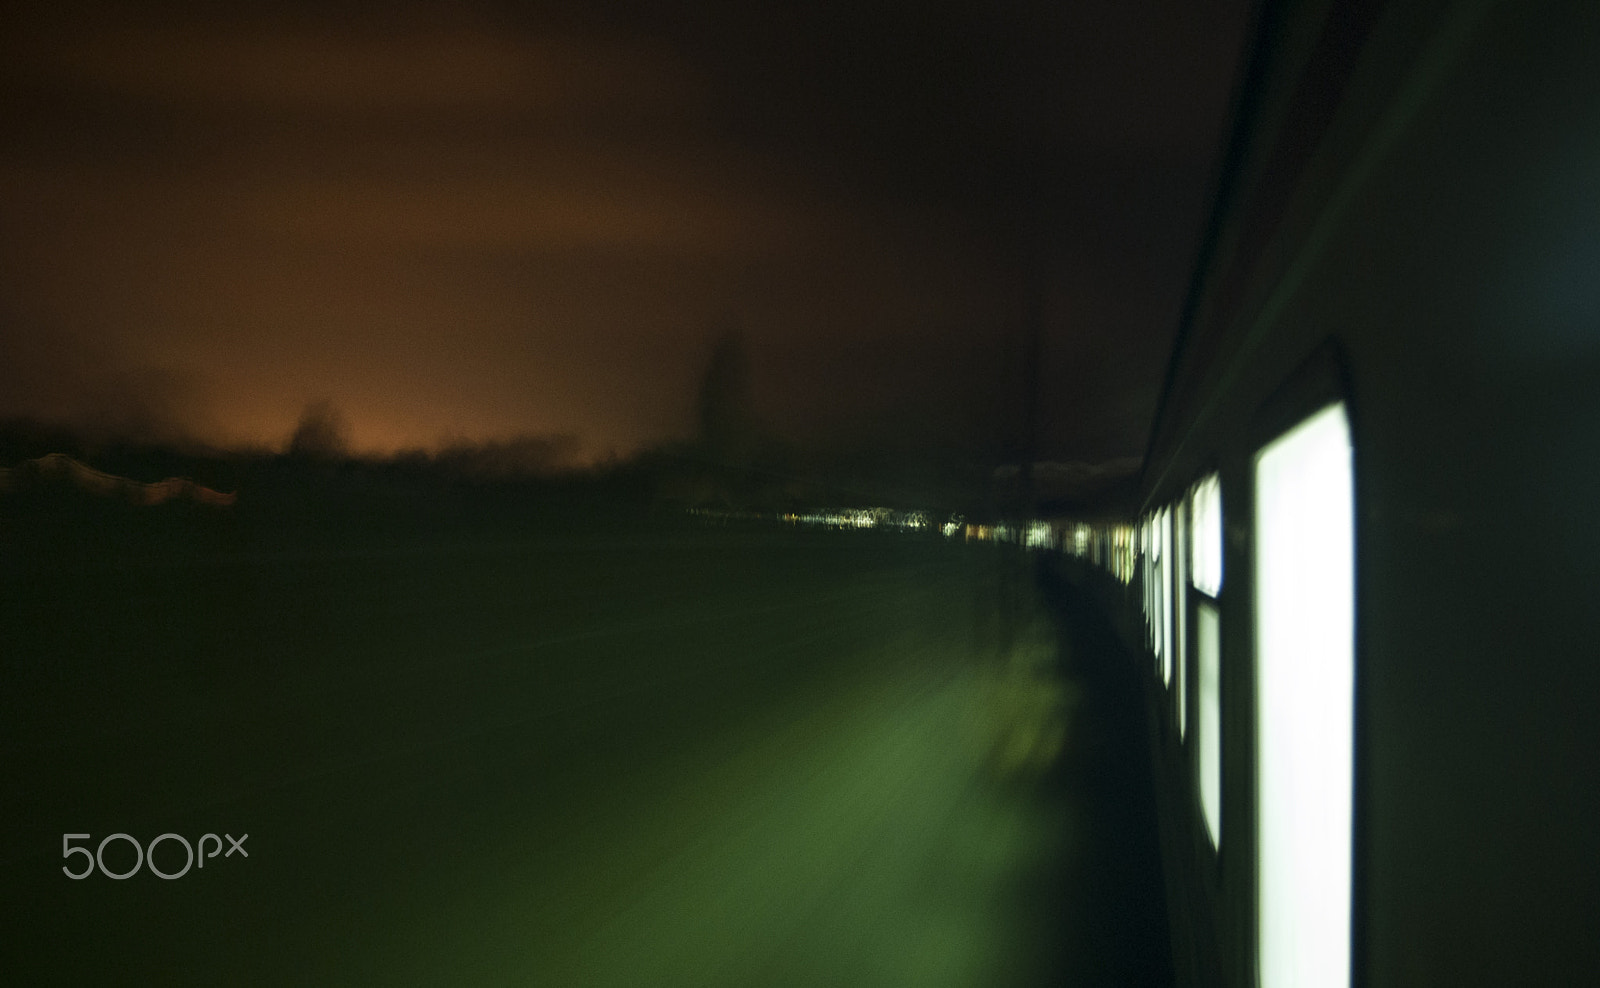 Nikon D200 + Tokina AF 235 II (AF 20-35mm f/3.5-4.5) sample photo. Moving at night photography